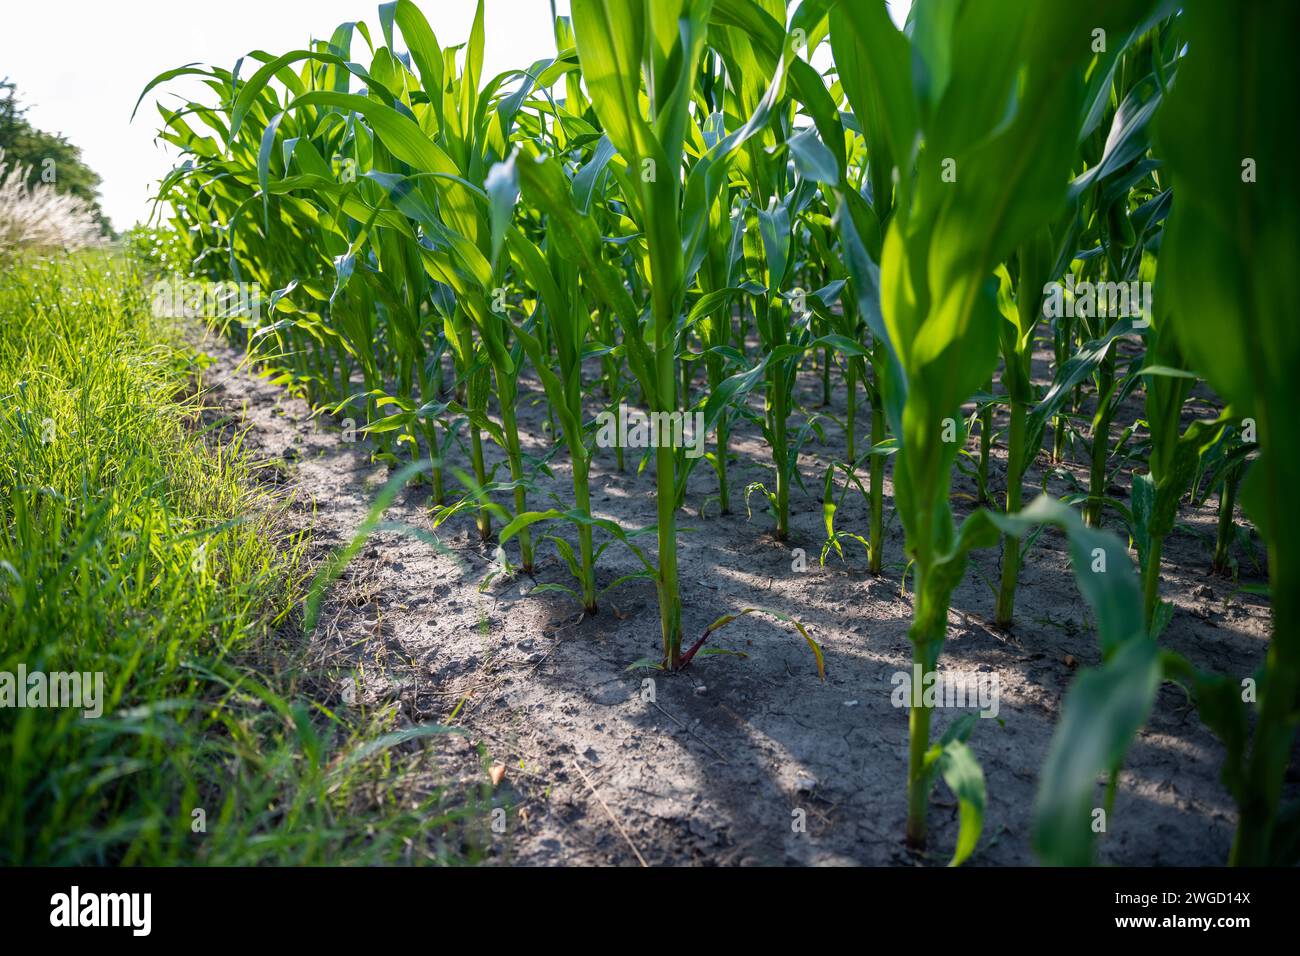 Mais im Wachstum auf einem Acker Stock Photo